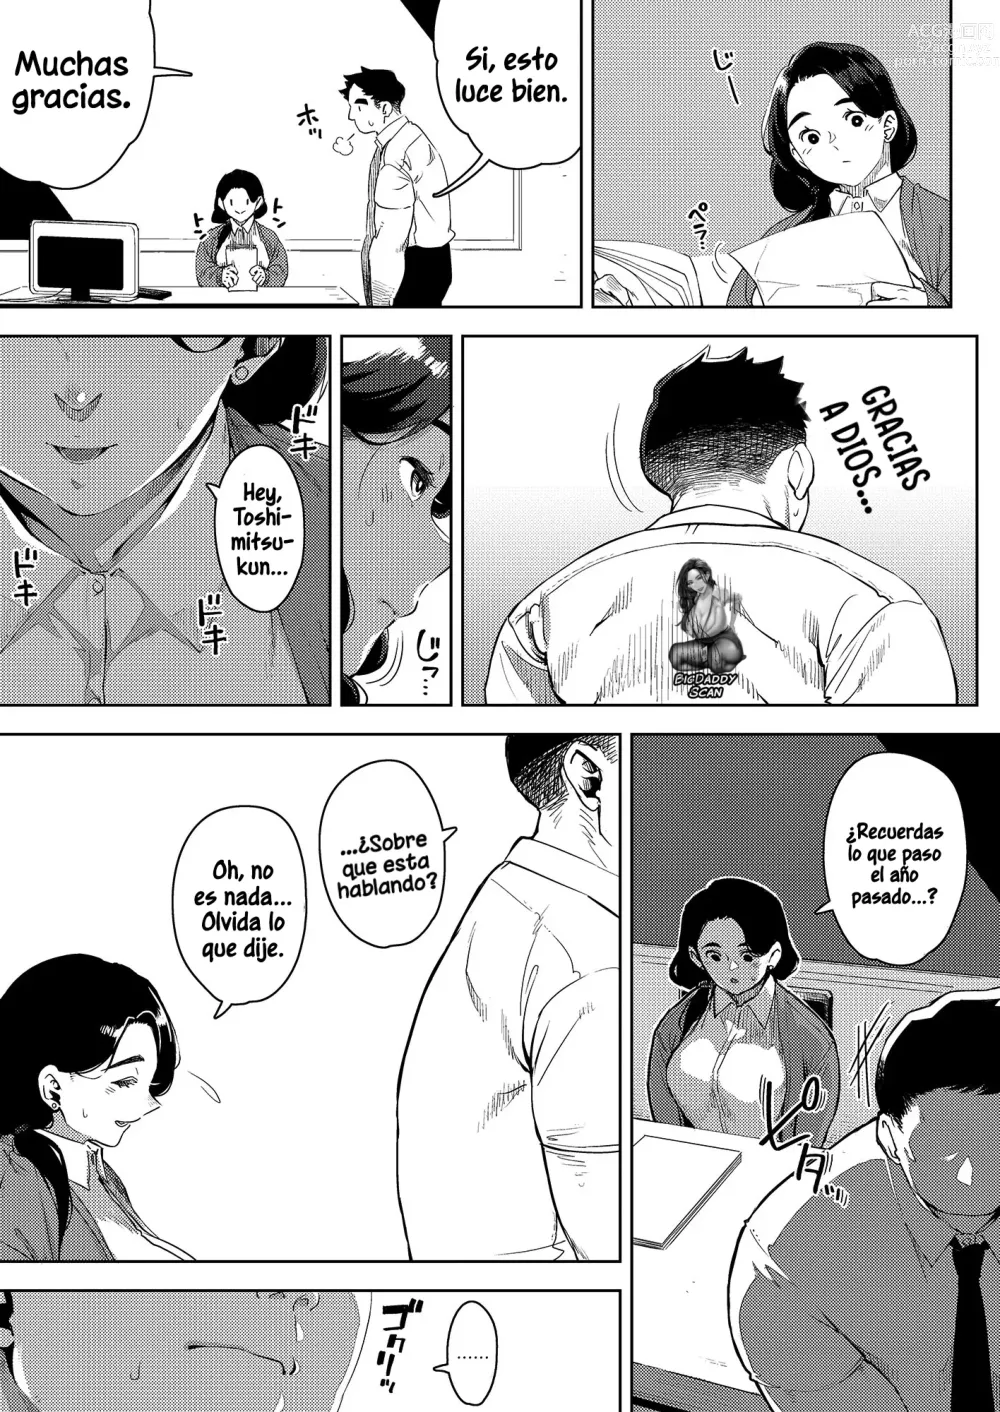 Page 6 of doujinshi La jefa casada Yumiko teniendo sexo con su subordinado 2